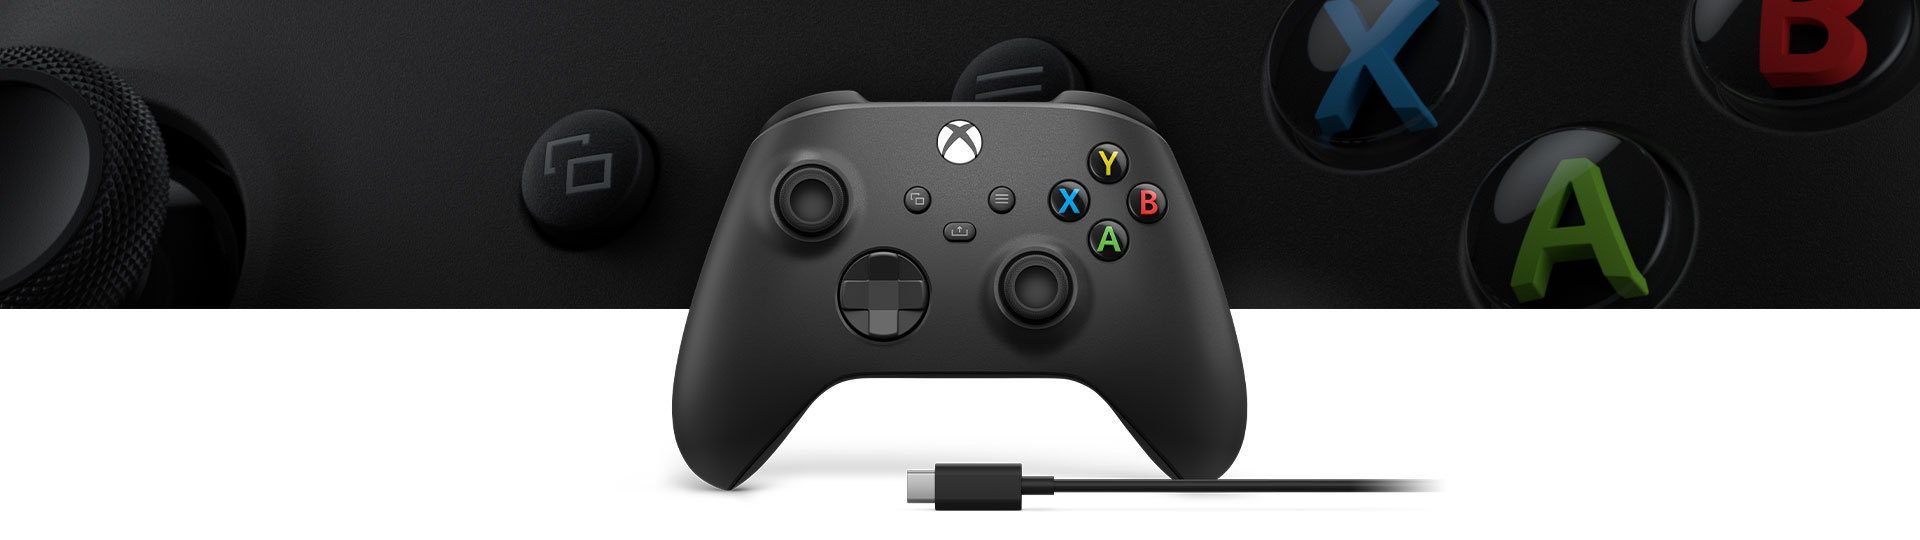 Xbox ワイヤレス コントローラー + USB-C® ケーブル、コントローラー表面テクスチャのクローズアップ